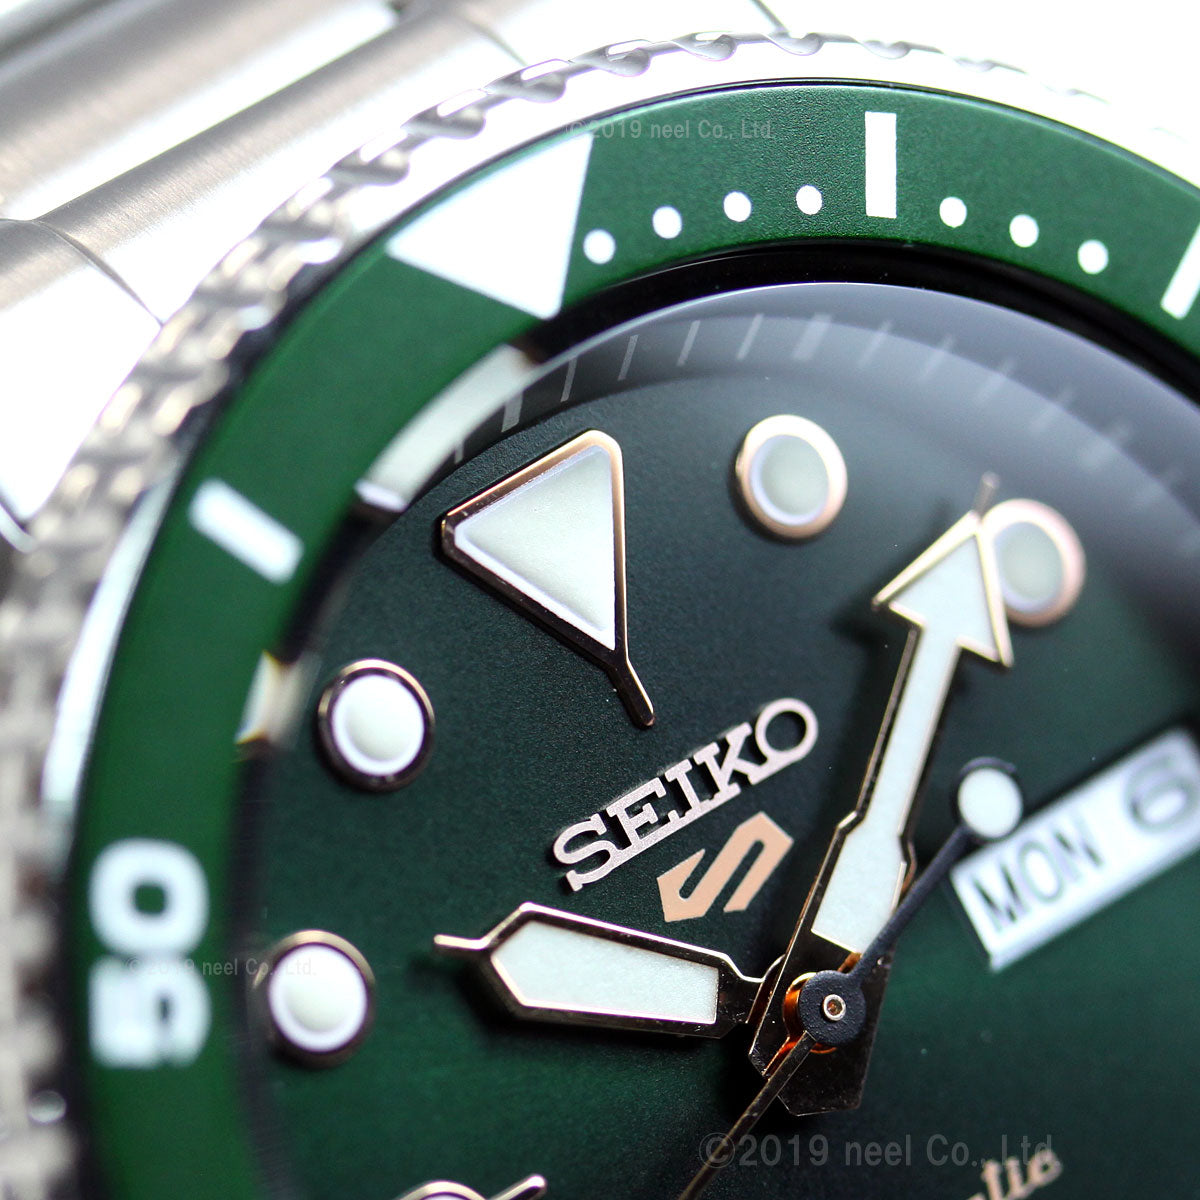 セイコー5 スポーツ SEIKO 5 SPORTS 自動巻き メカニカル 流通限定モデル 腕時計 メンズ セイコーファイブ スポーツ Sports SBSA013